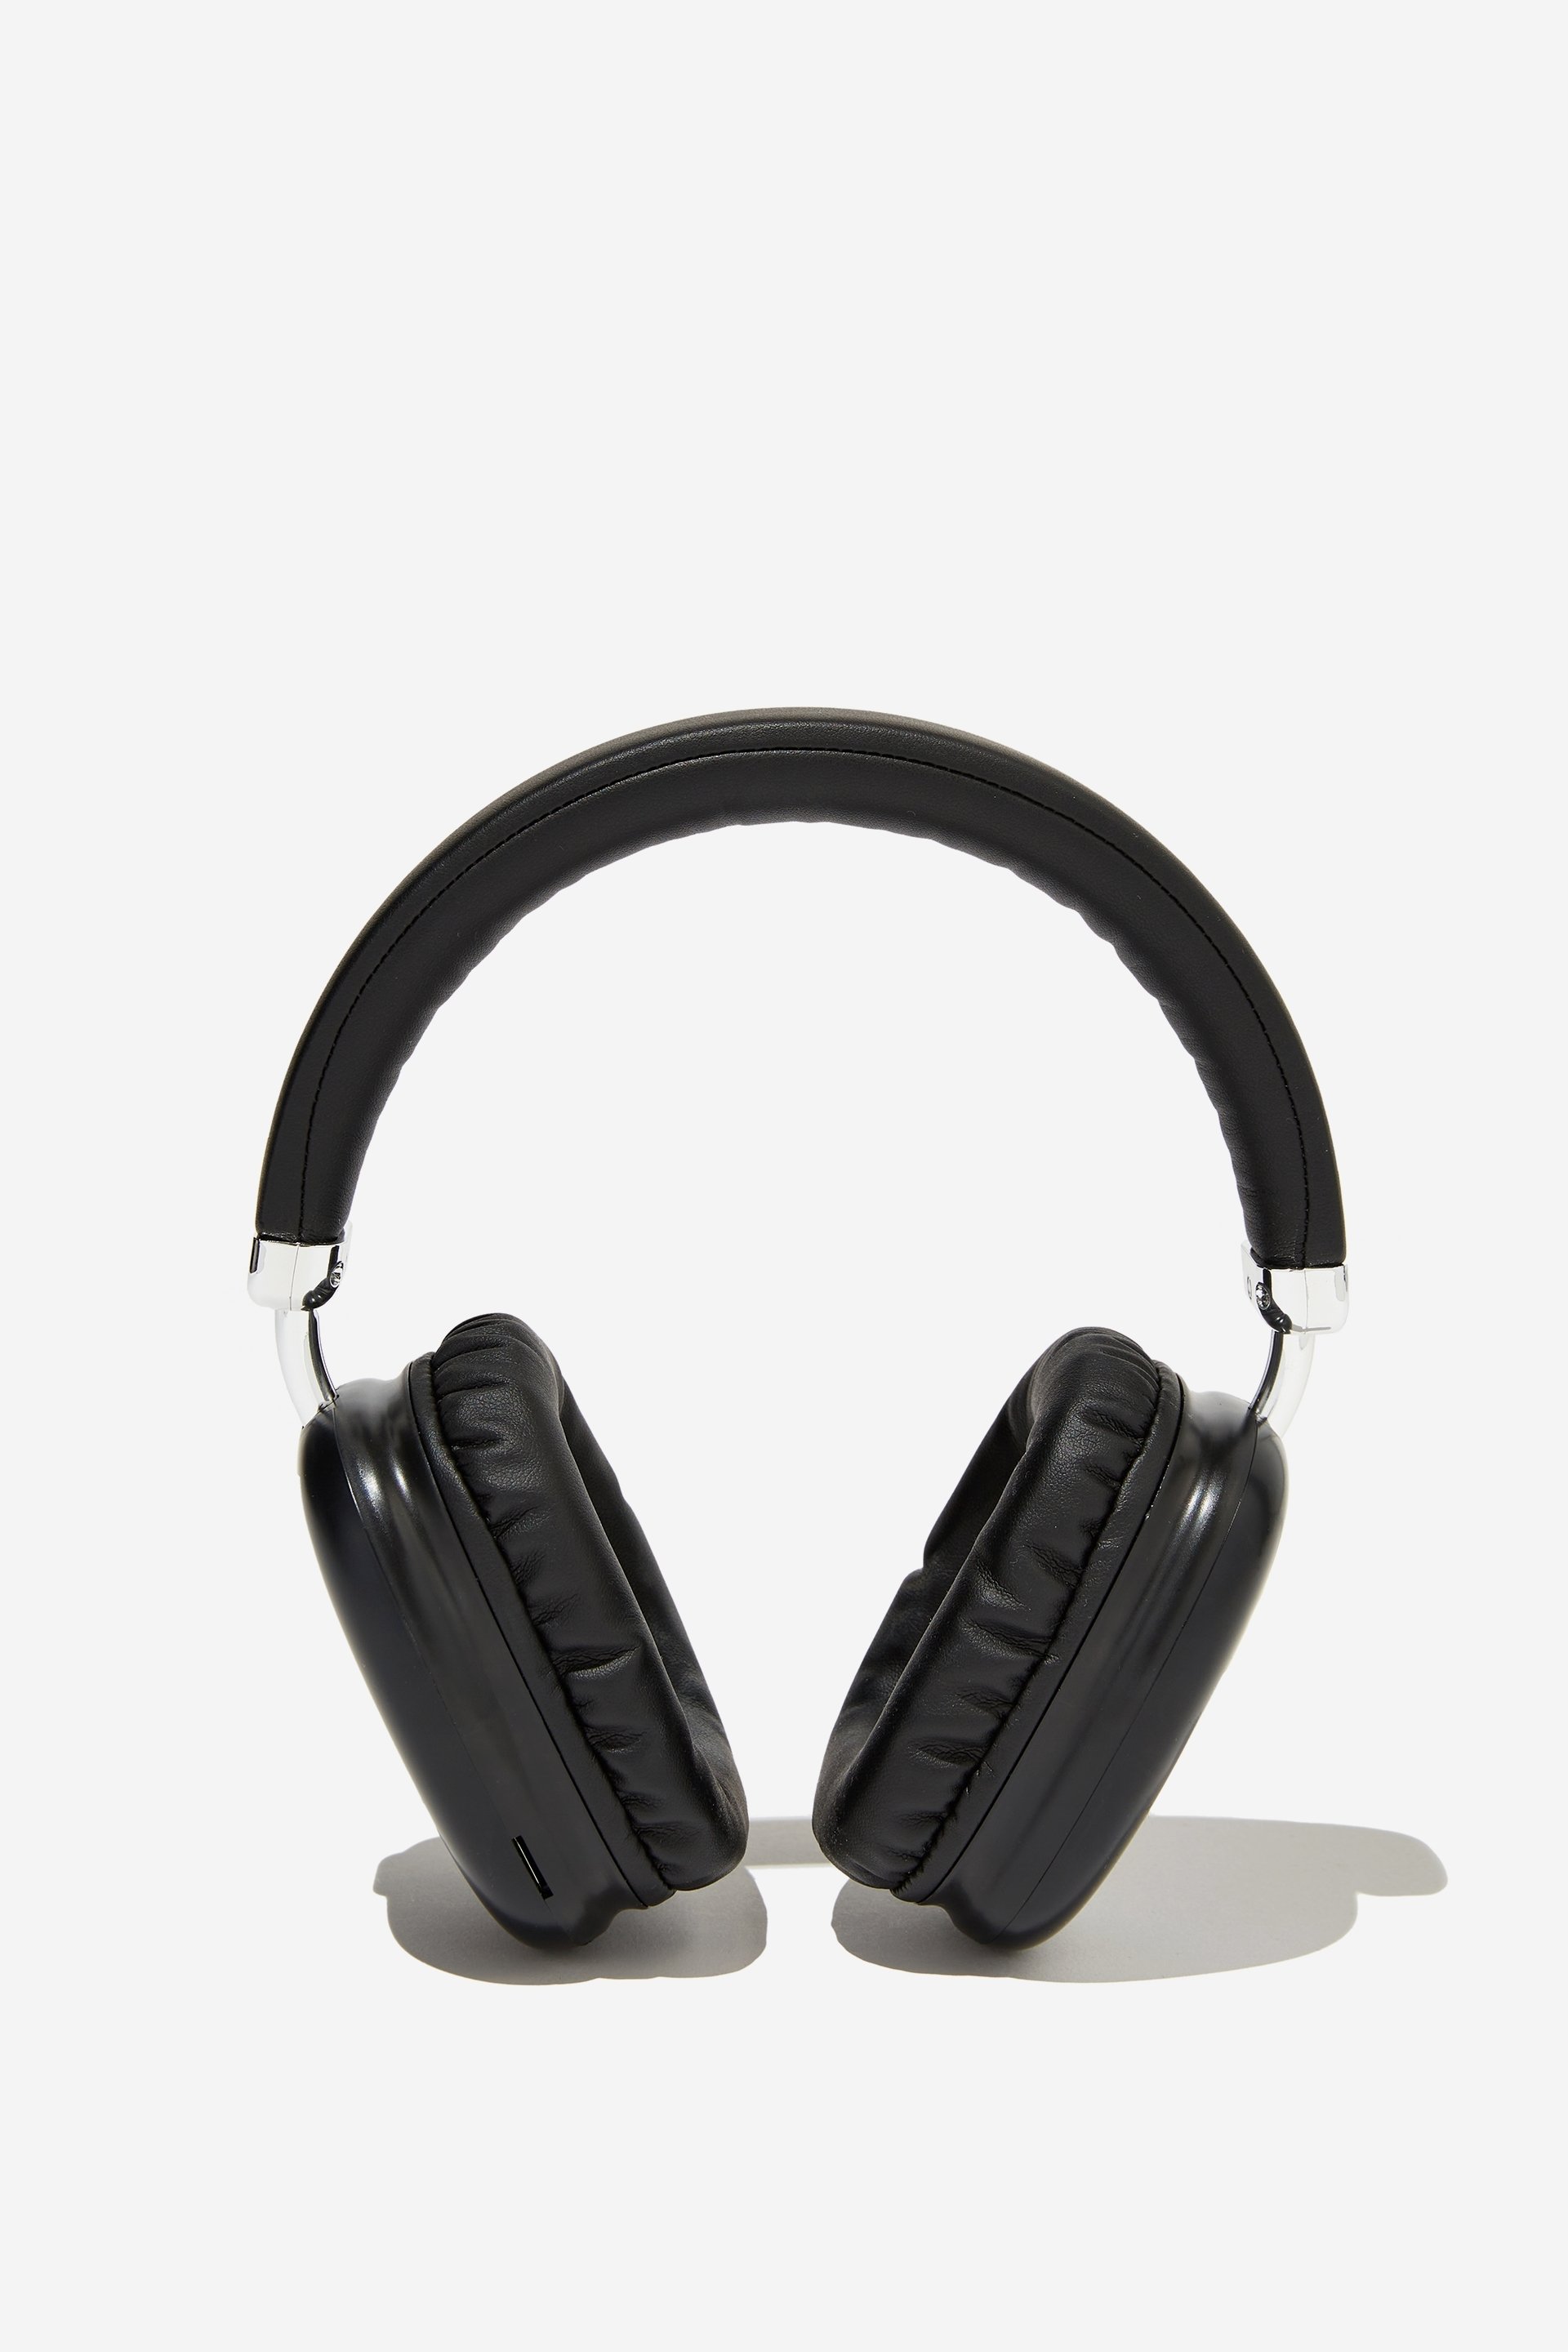 Typo - Wireless Headphones - Black